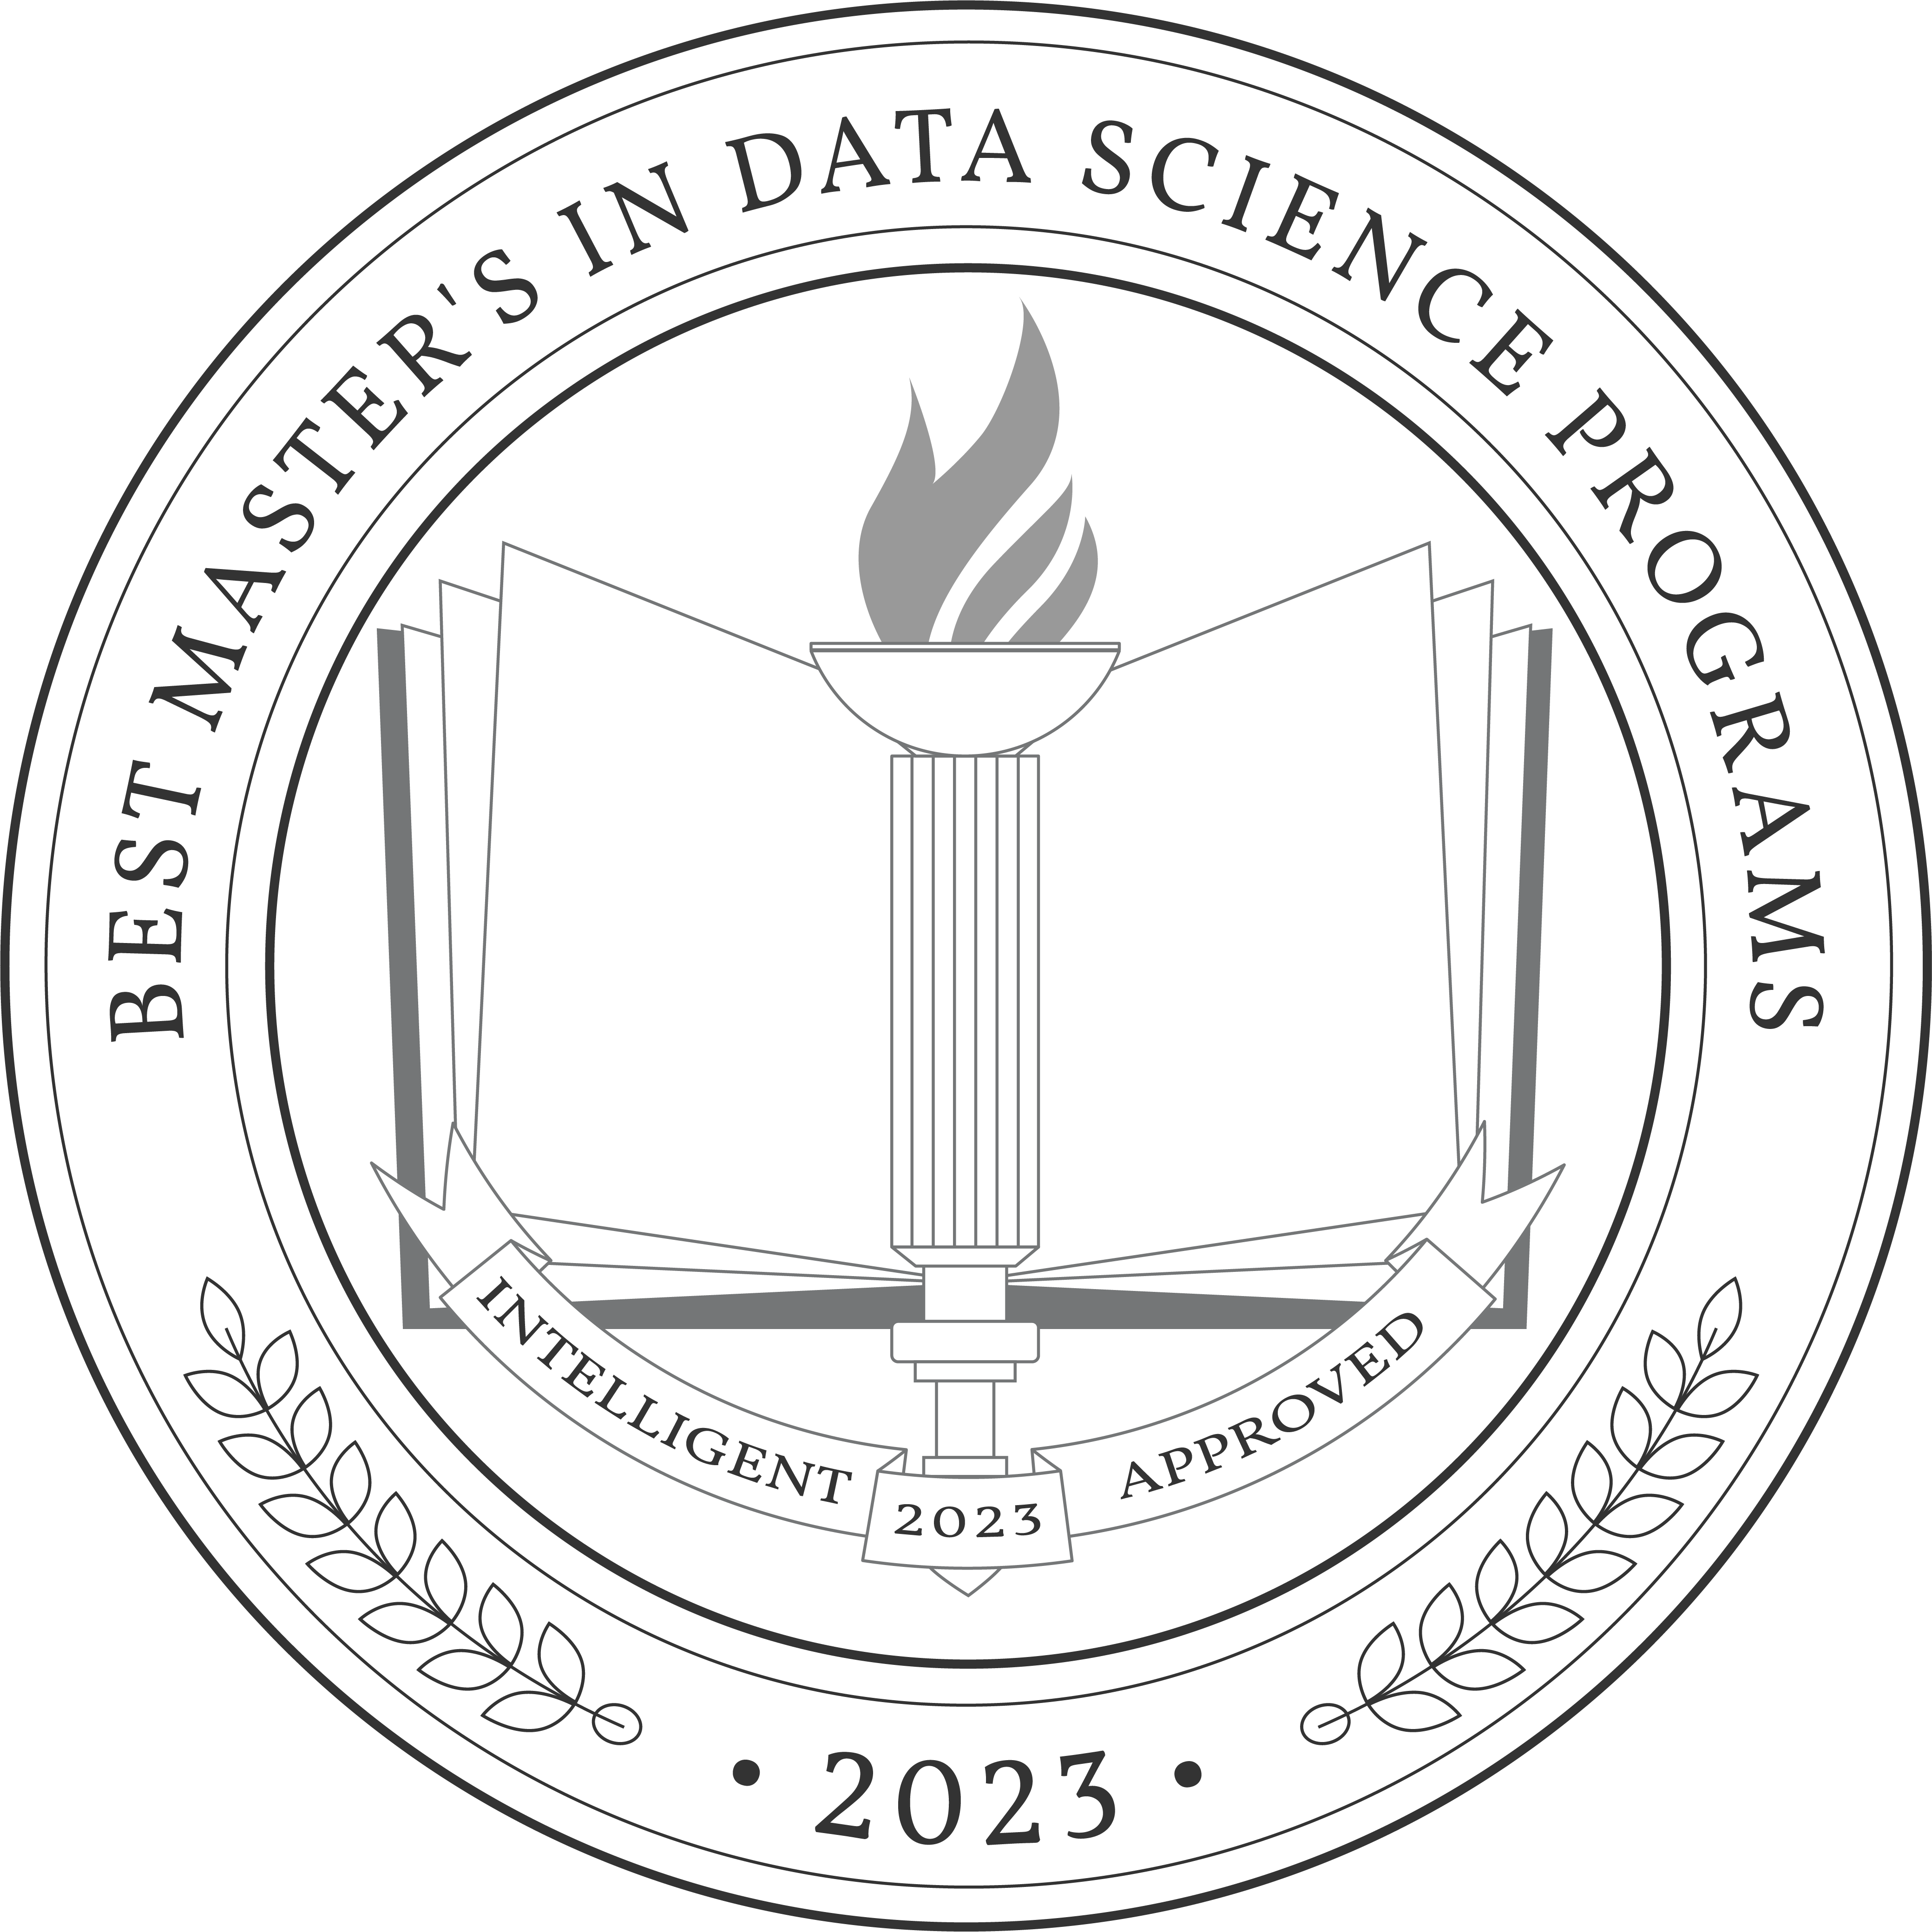 Best Master's in Data Science Programs 2023